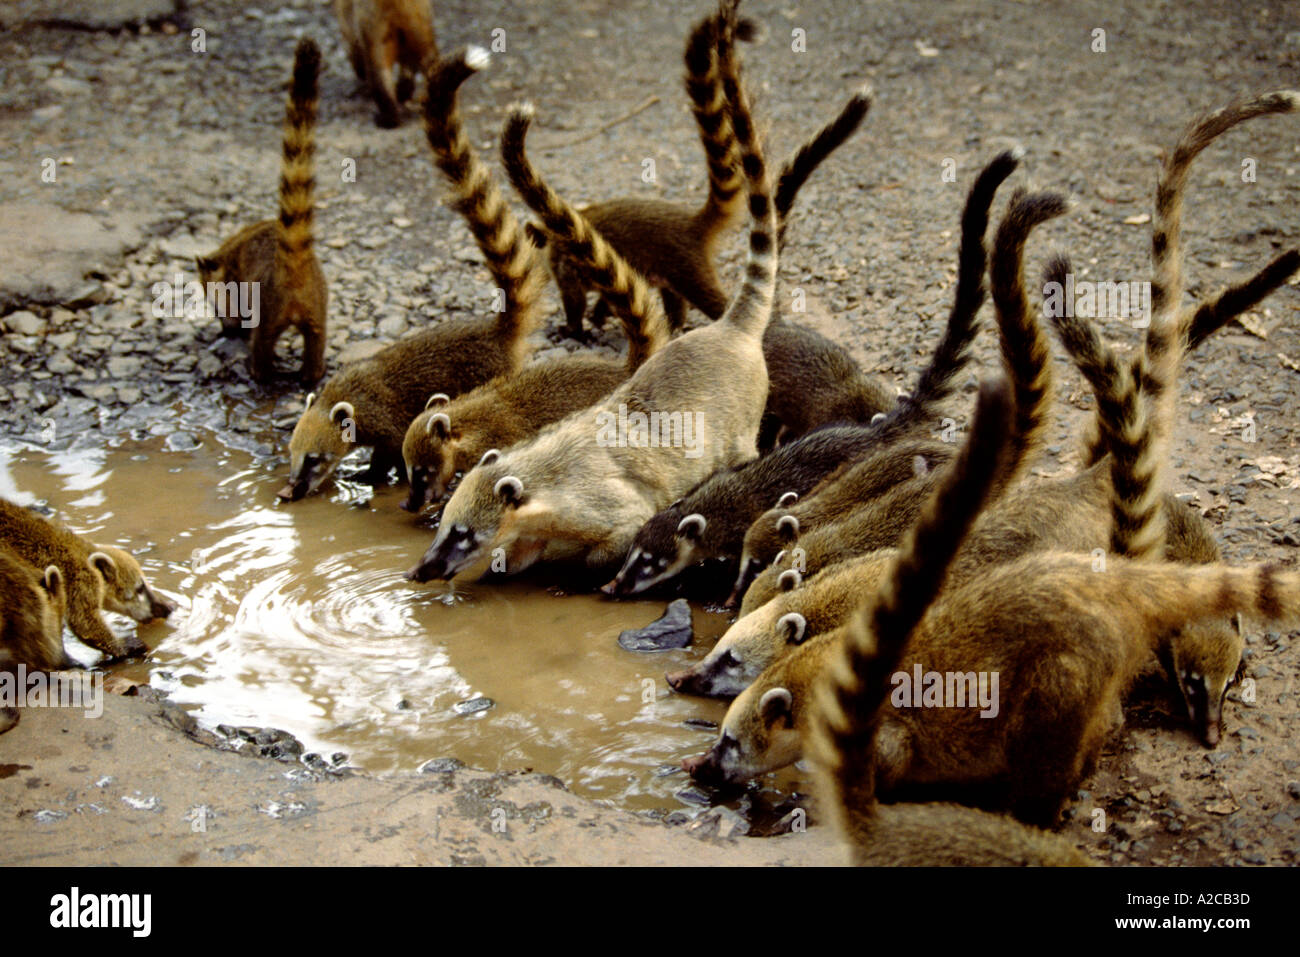 Les coatis. Chutes d'Iguaçu. Frontière Argentine-brésil Banque D'Images